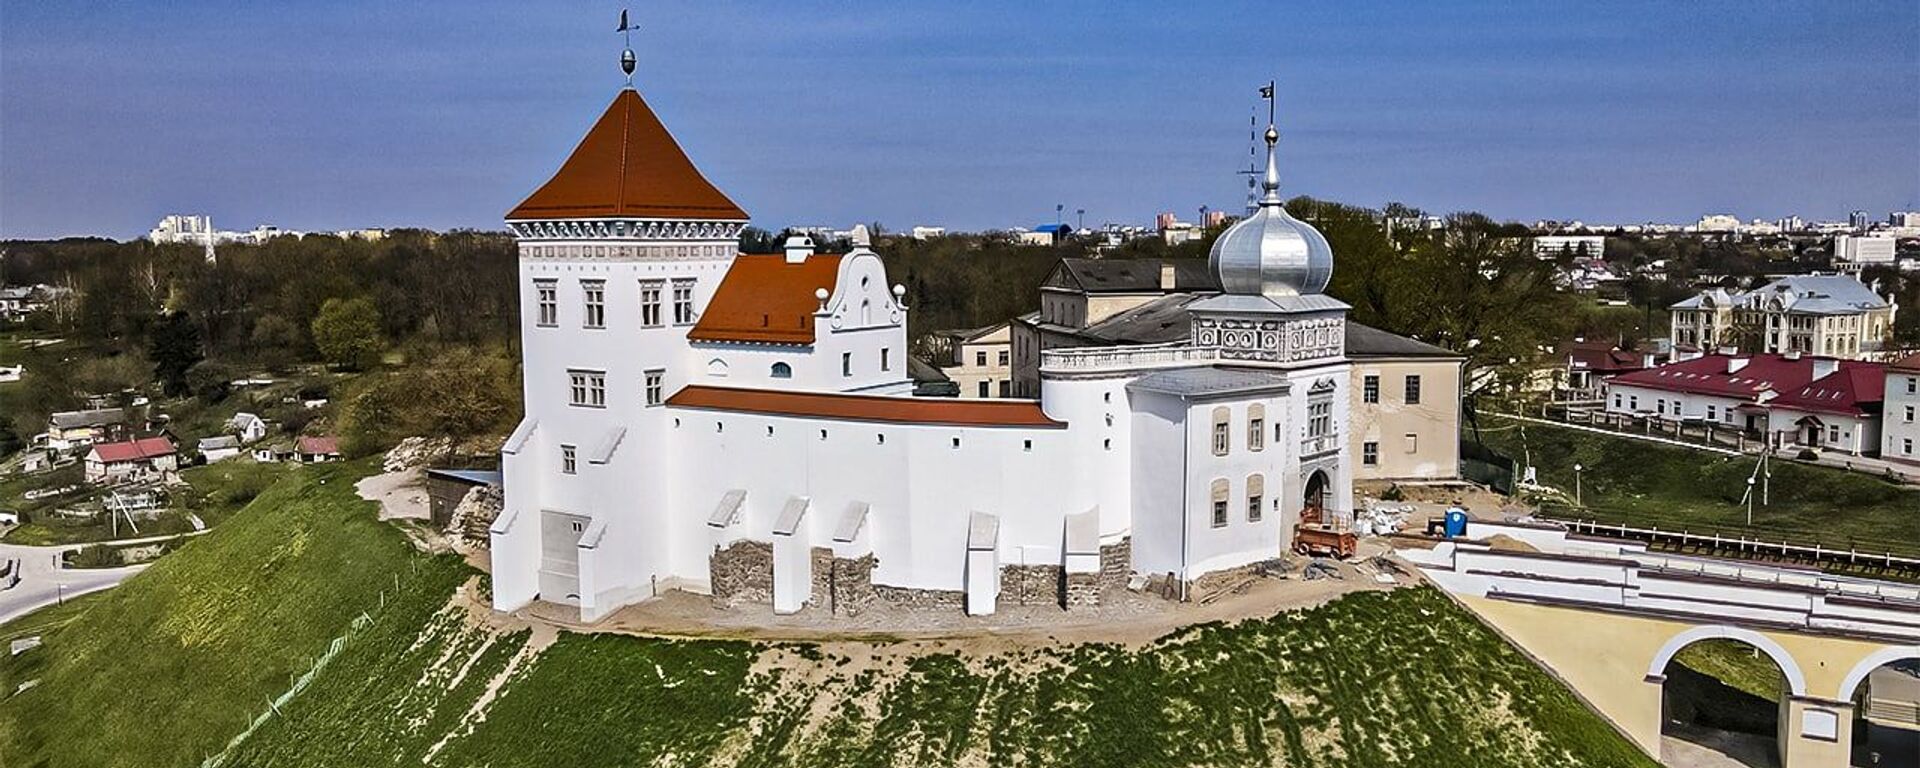 Как выглядит Старый замок в Гродно после реконструкции – видео - Sputnik Беларусь, 1920, 18.05.2021